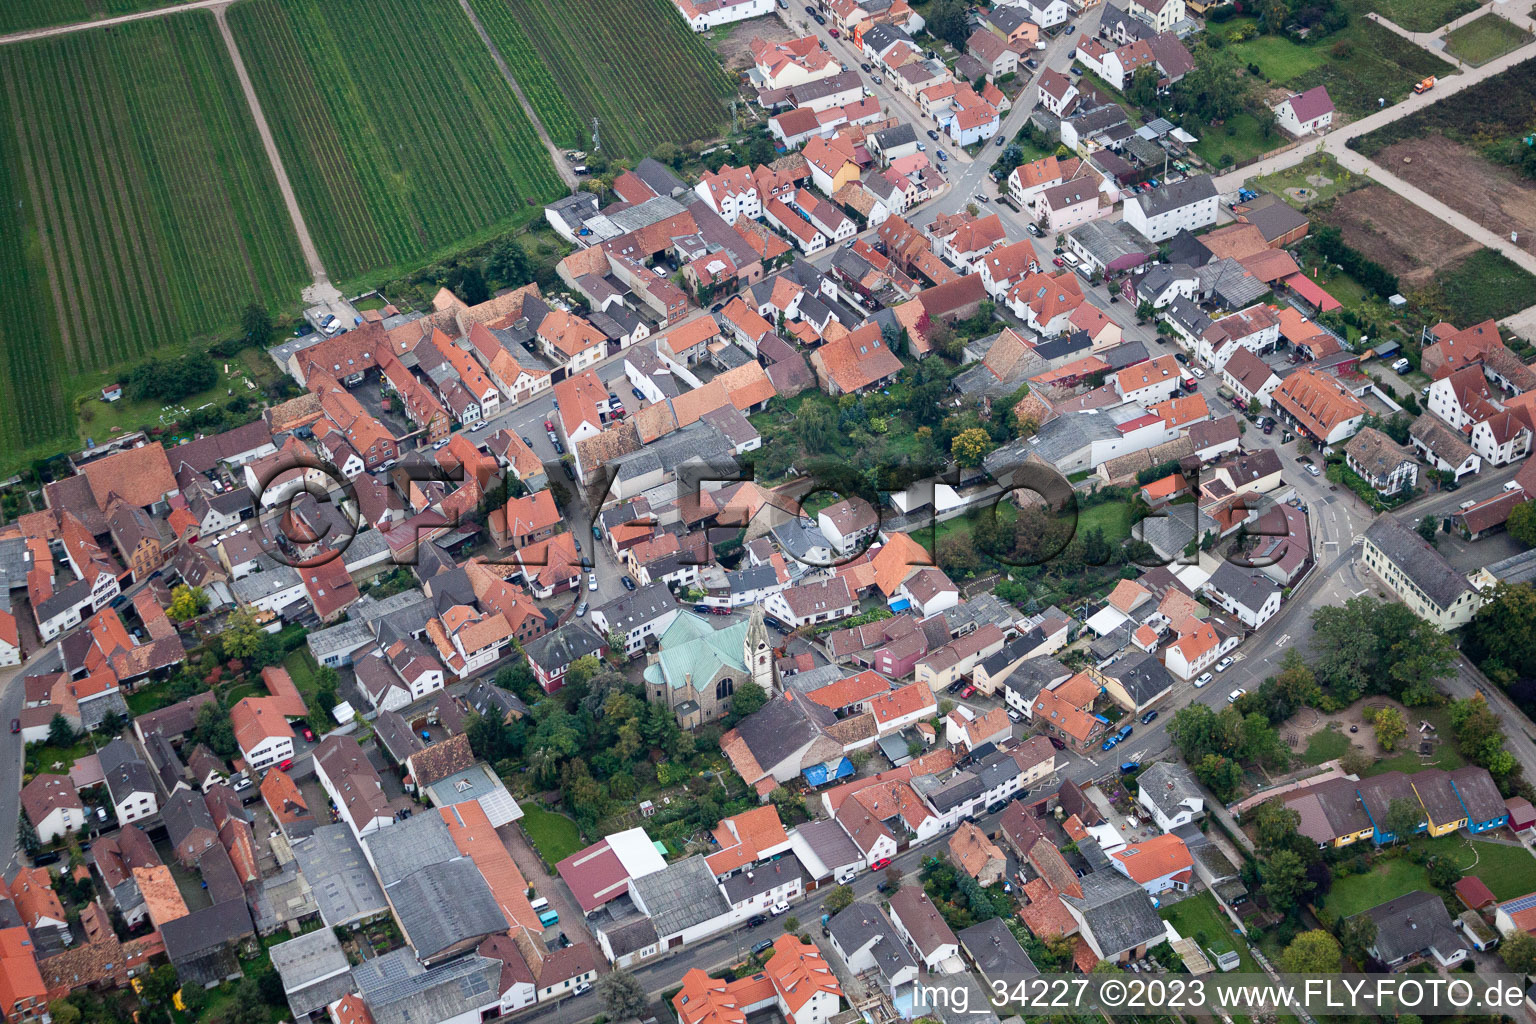 Ellerstadt im Bundesland Rheinland-Pfalz, Deutschland aus der Luft betrachtet